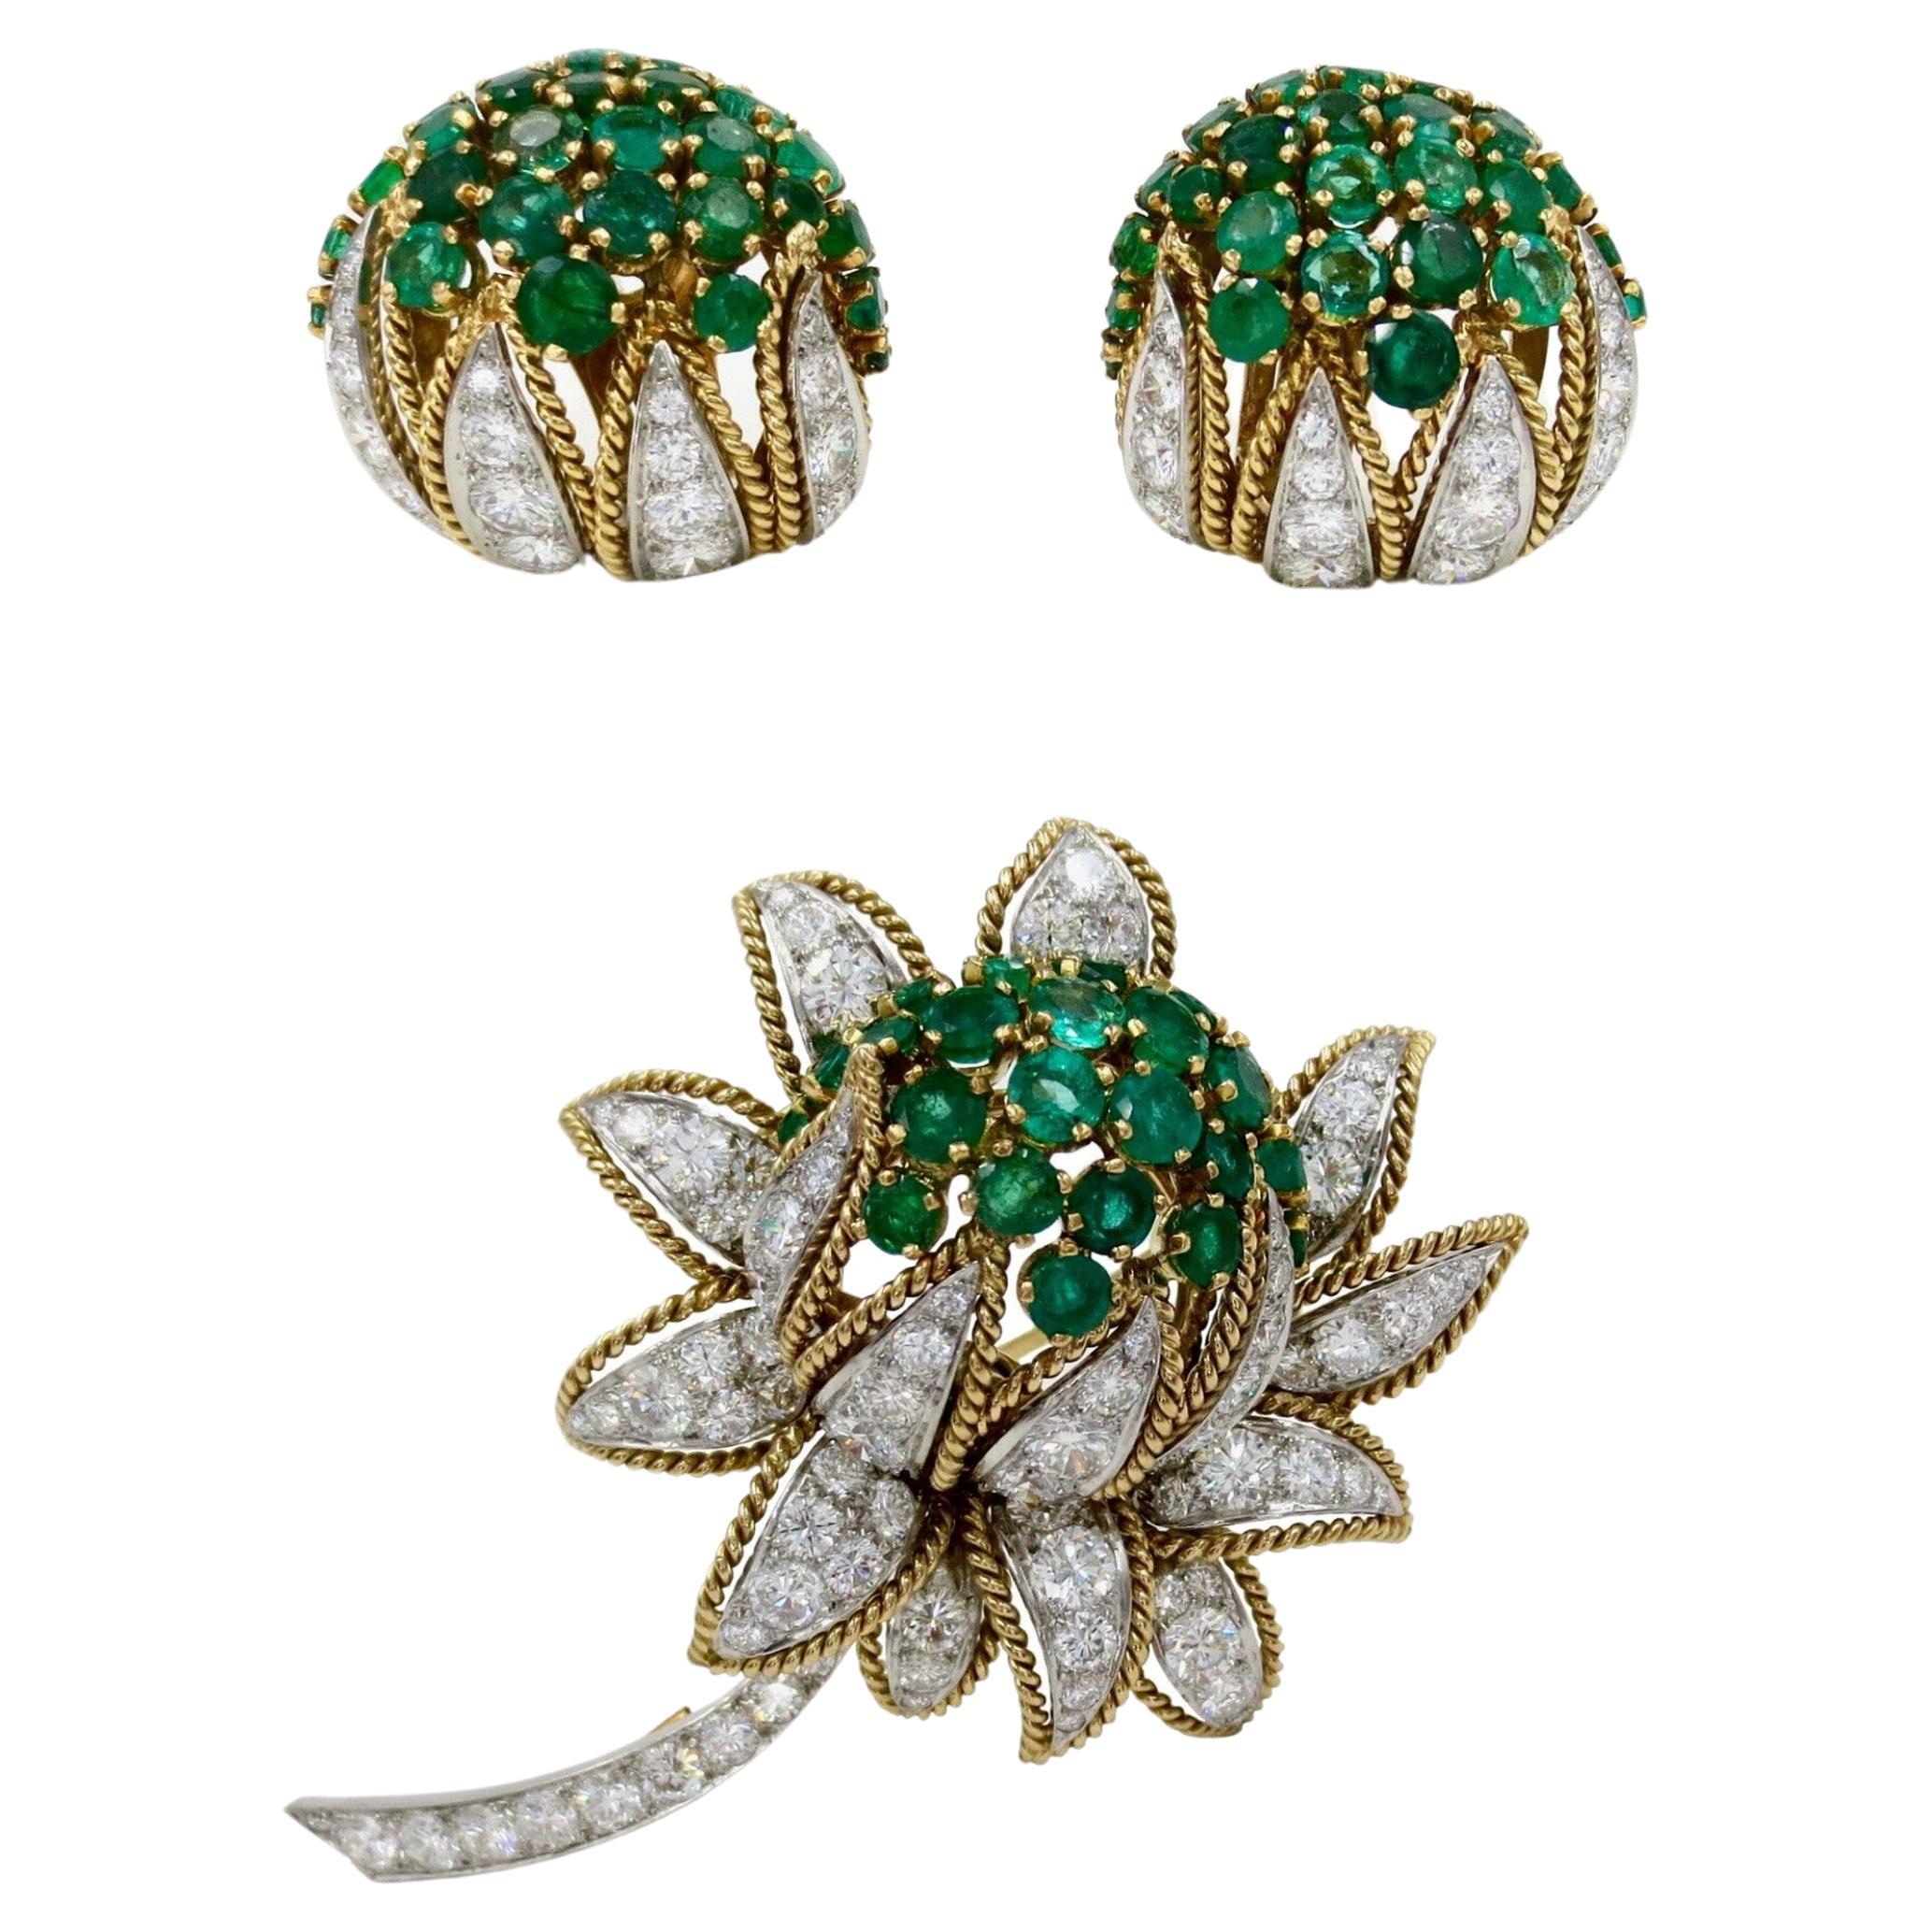 Vourakis Diamond & Emerald Earrings & Brooch Set in 18k Gold